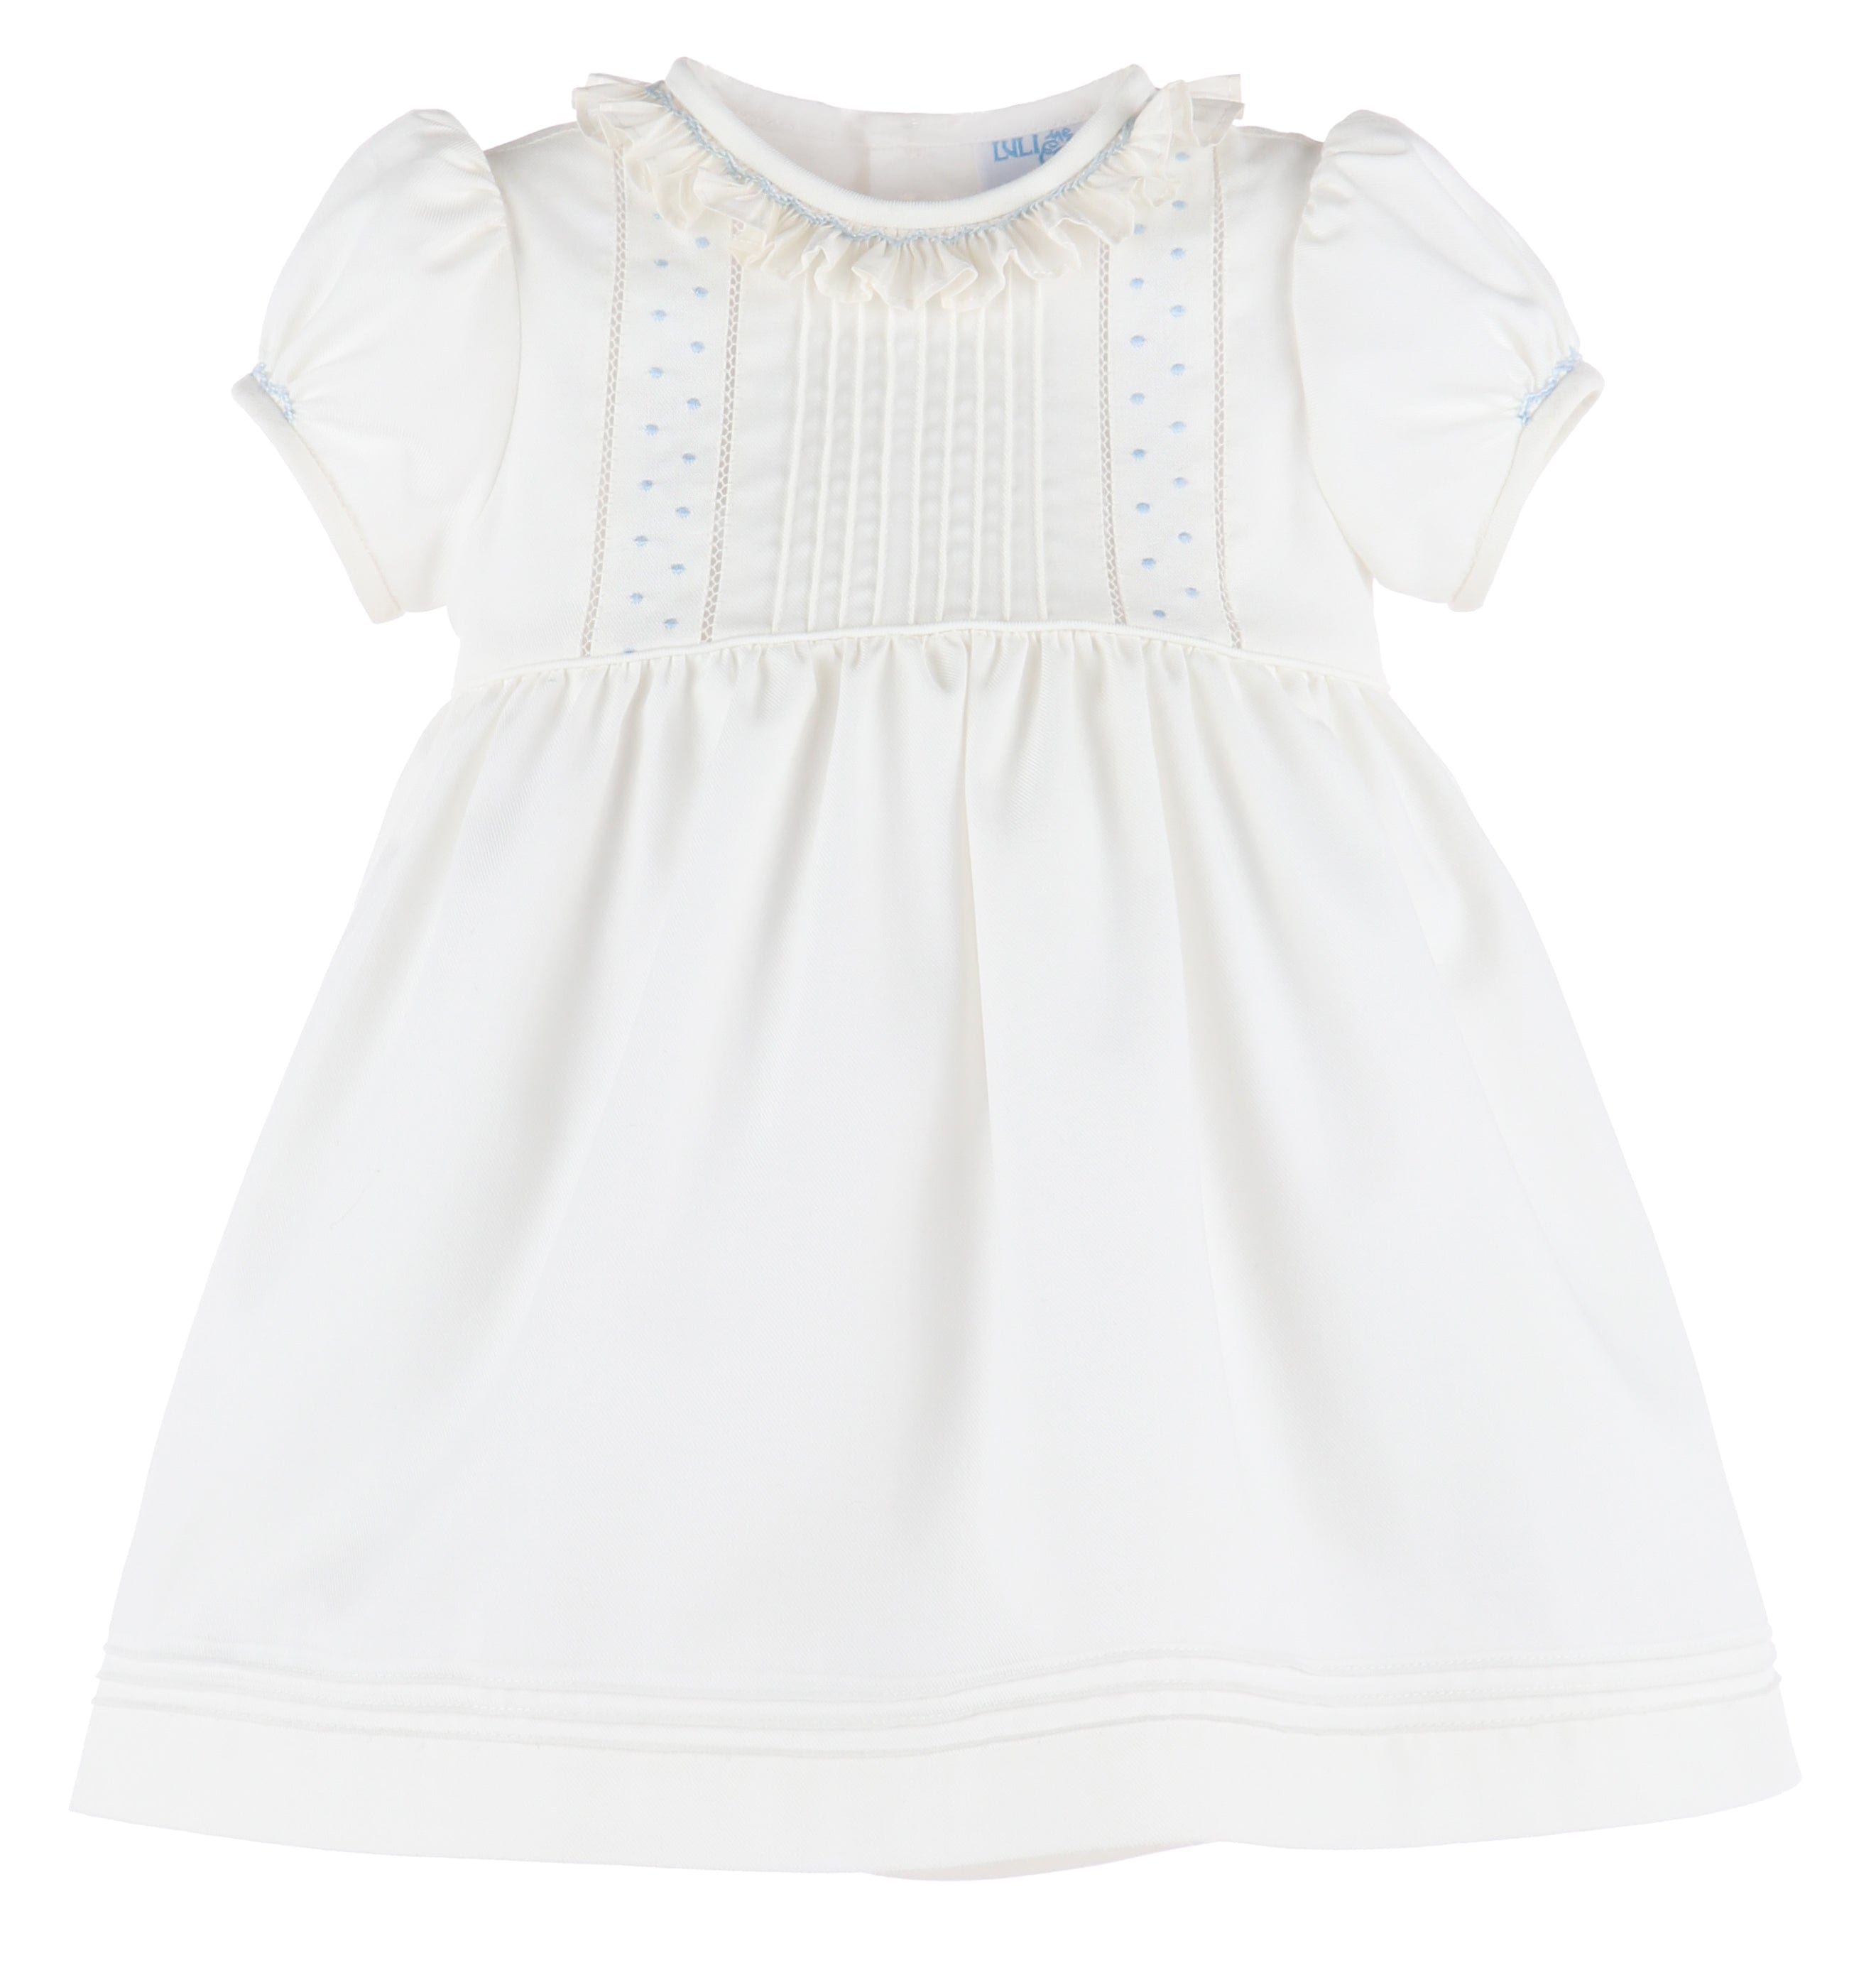 C&A - Casero & Associates Casero & Associates Embroidery Dots Dress - Little Miss Muffin Children & Home